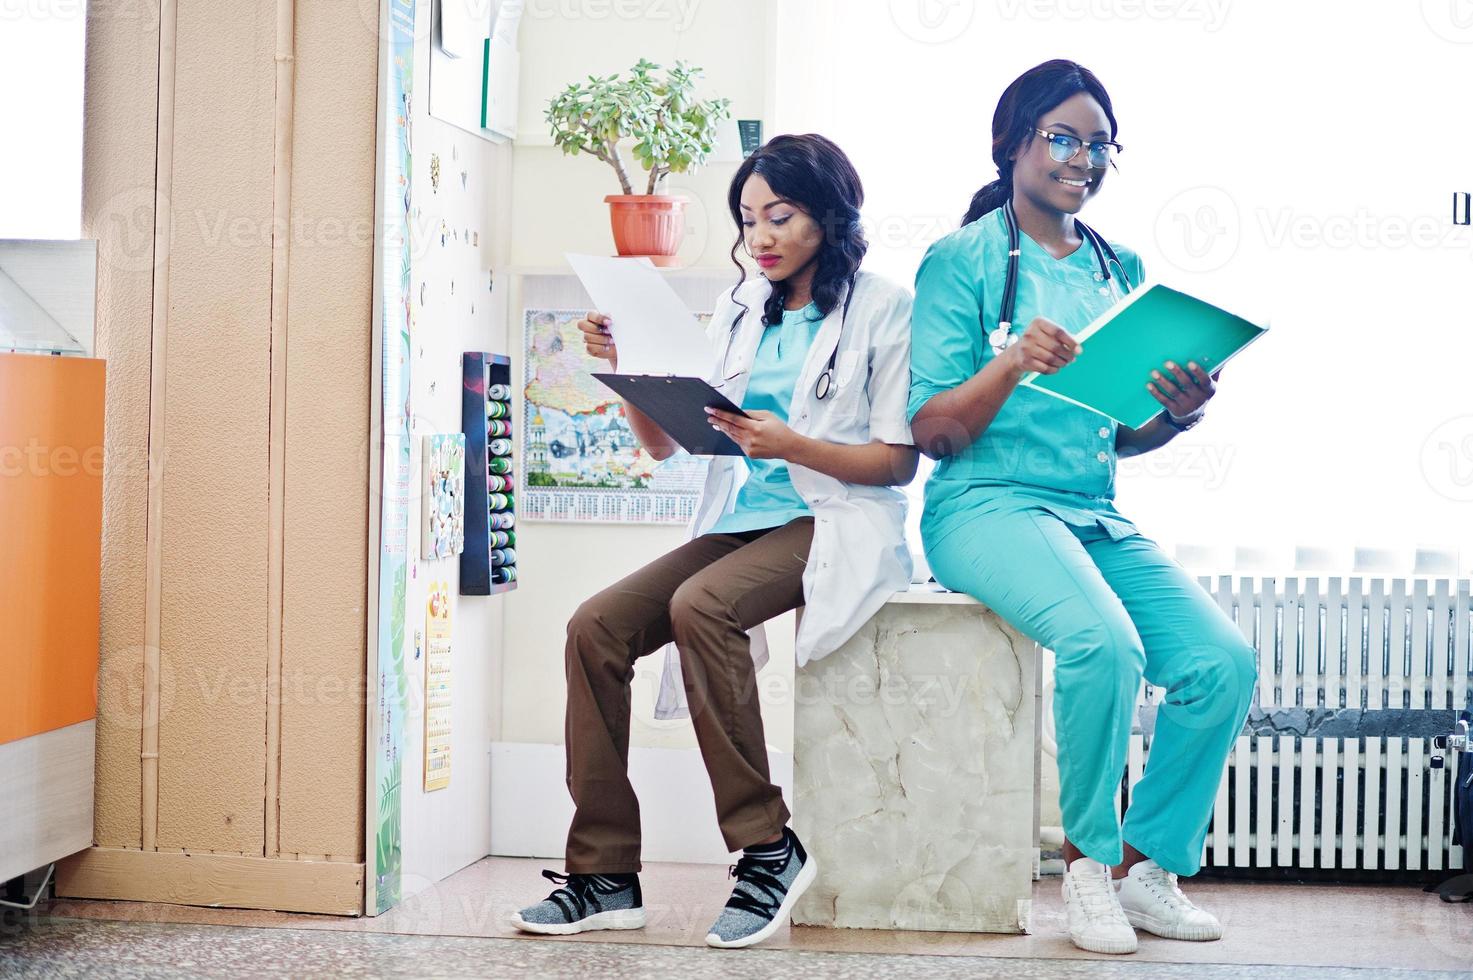 deux pharmaciens afro-américains travaillant dans une pharmacie à la pharmacie hospitalière. soins de santé africains. photo